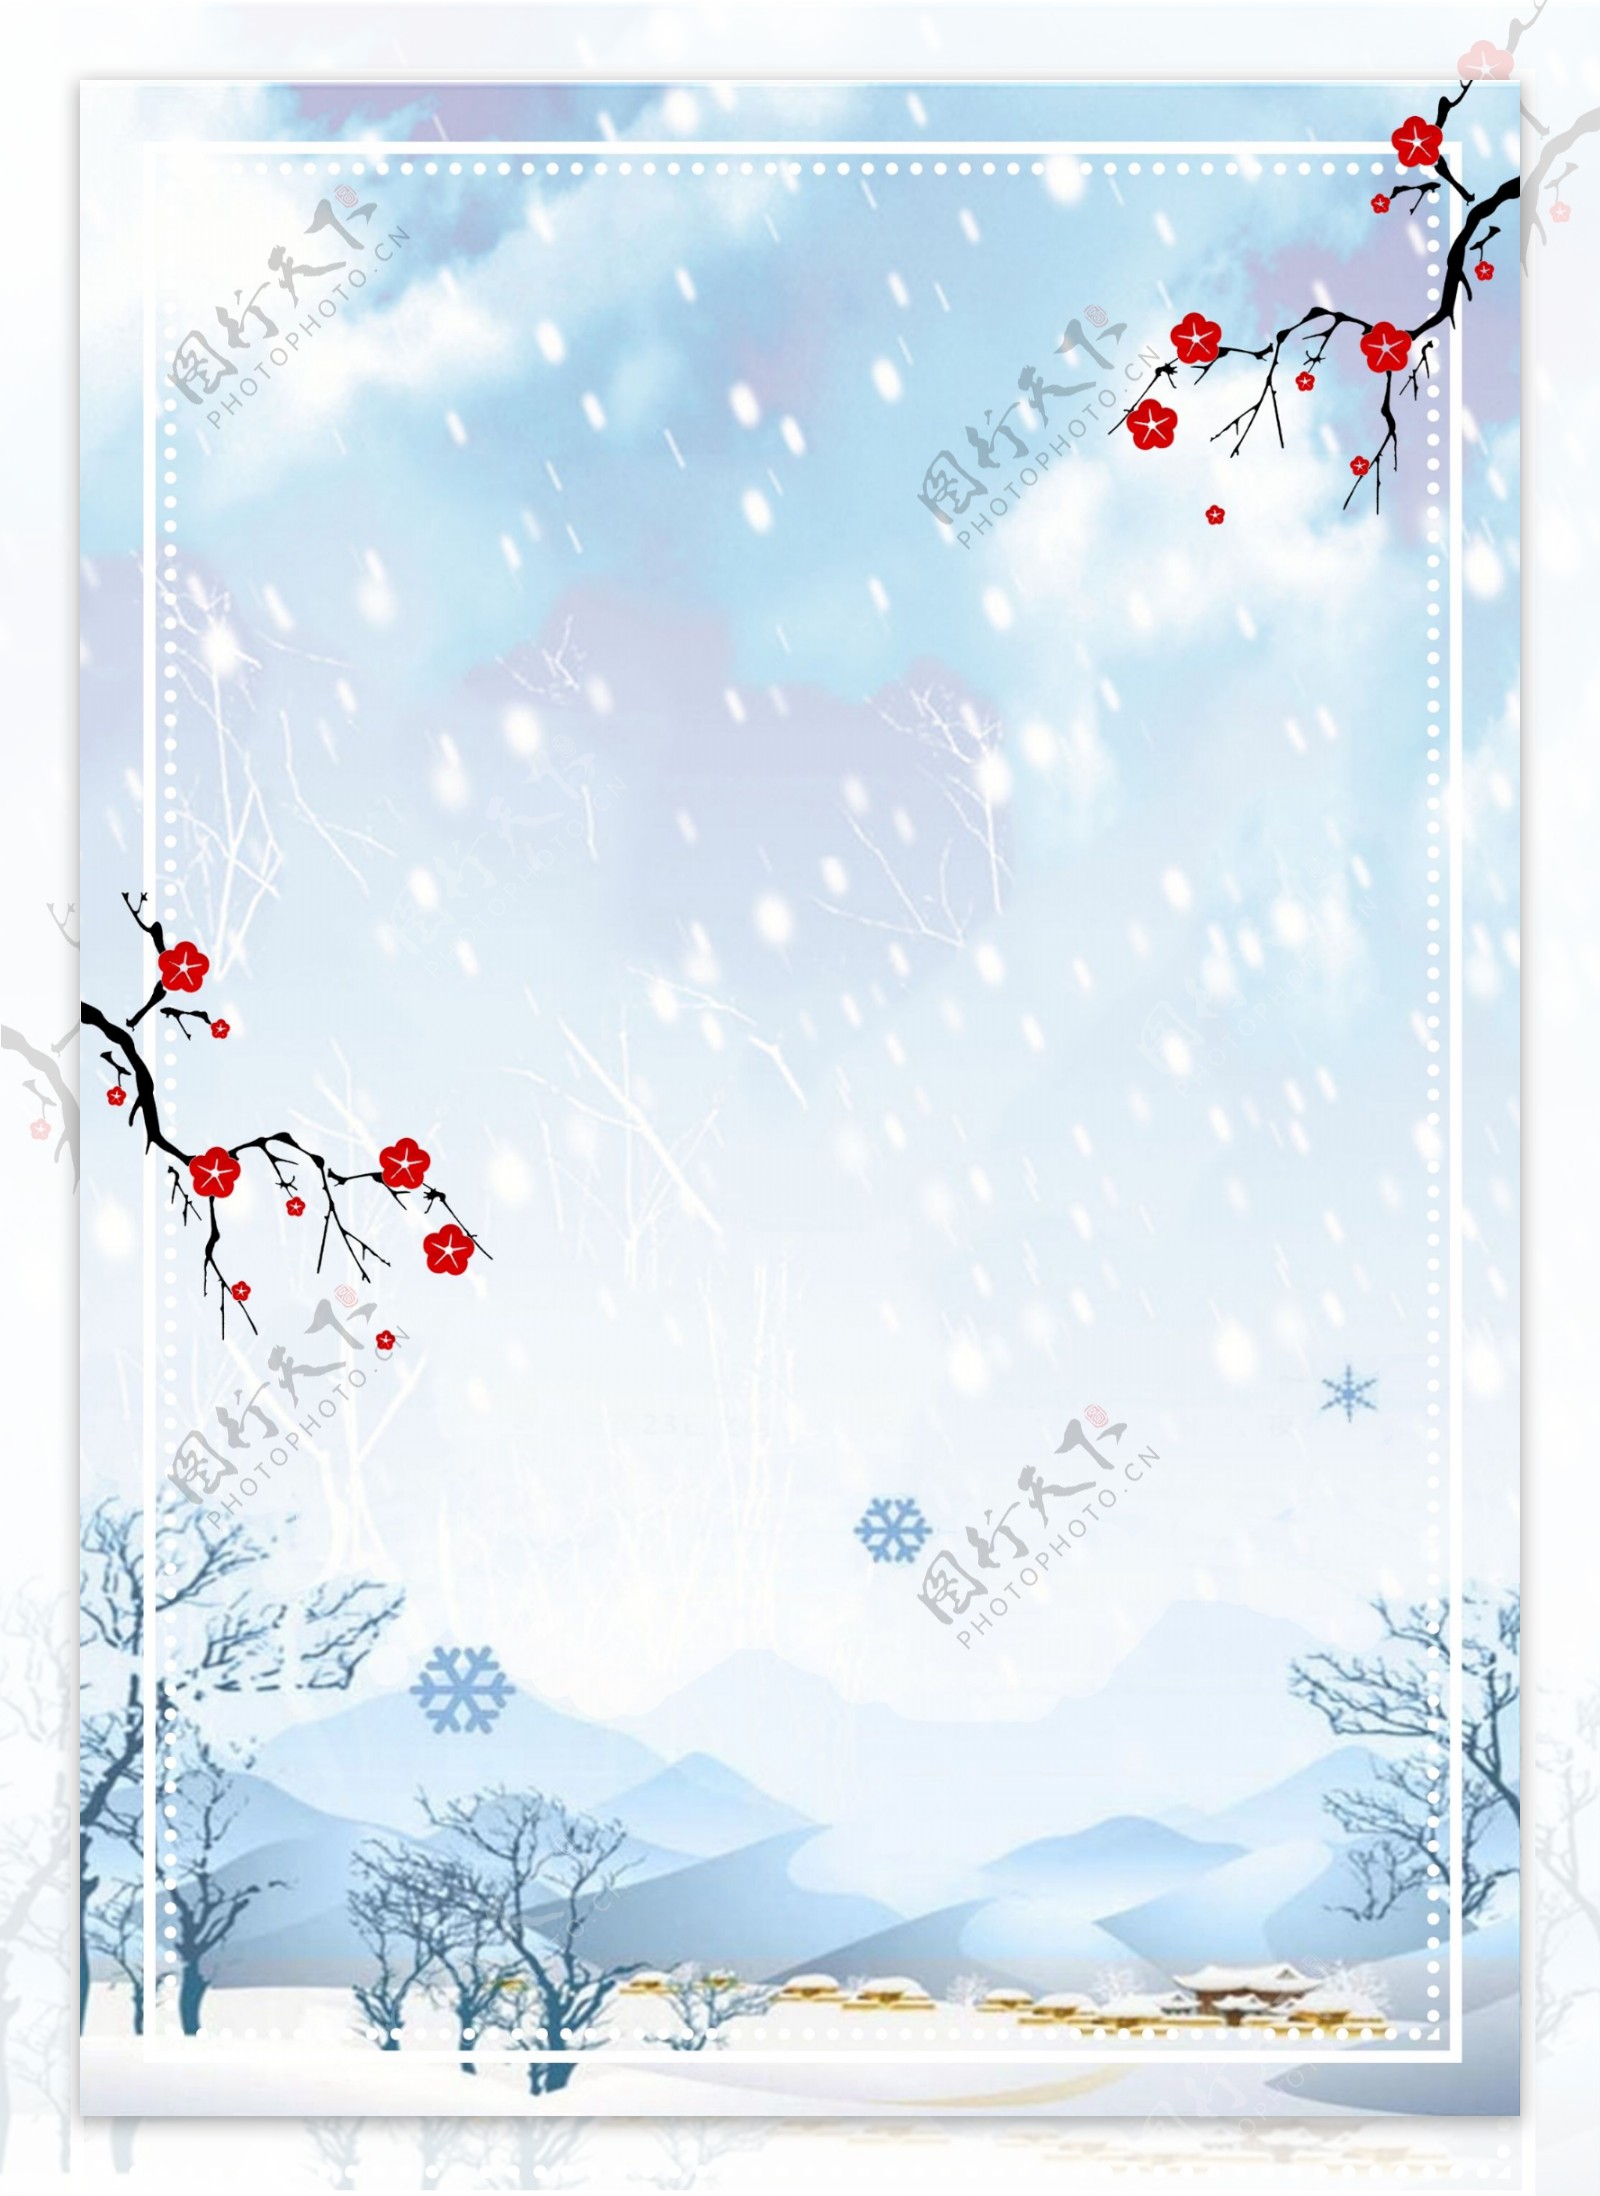 彩绘冬季下雪美景背景设计